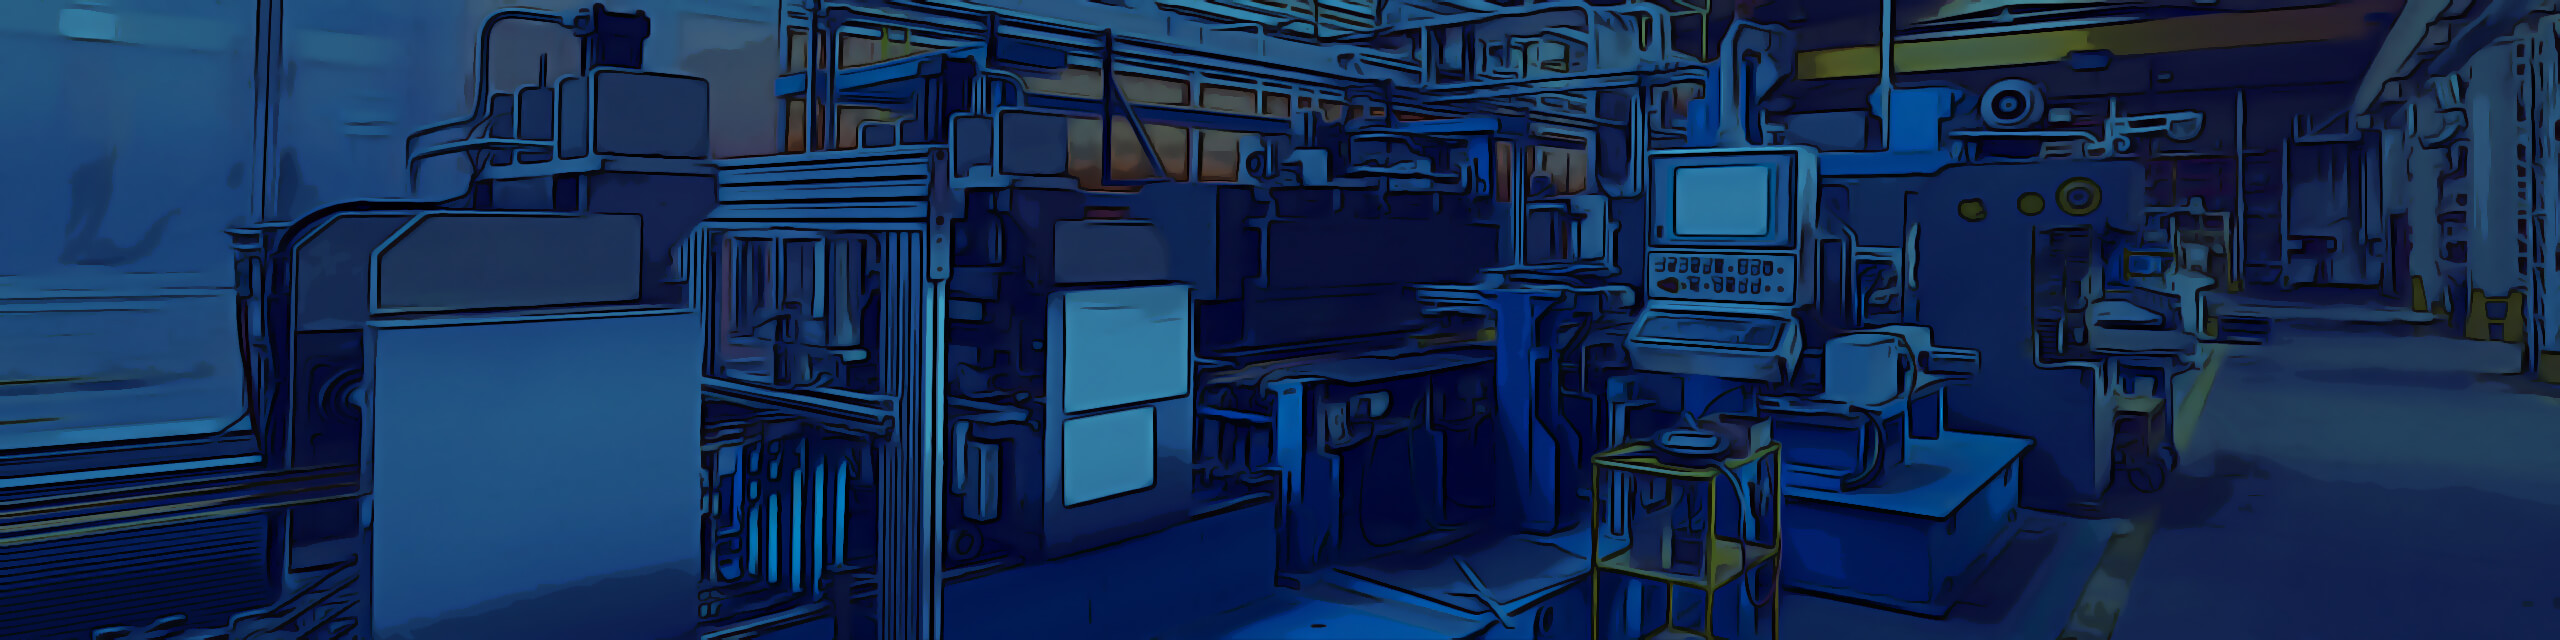 Ilustrační pozadí Obsluha stroje, technické pozice